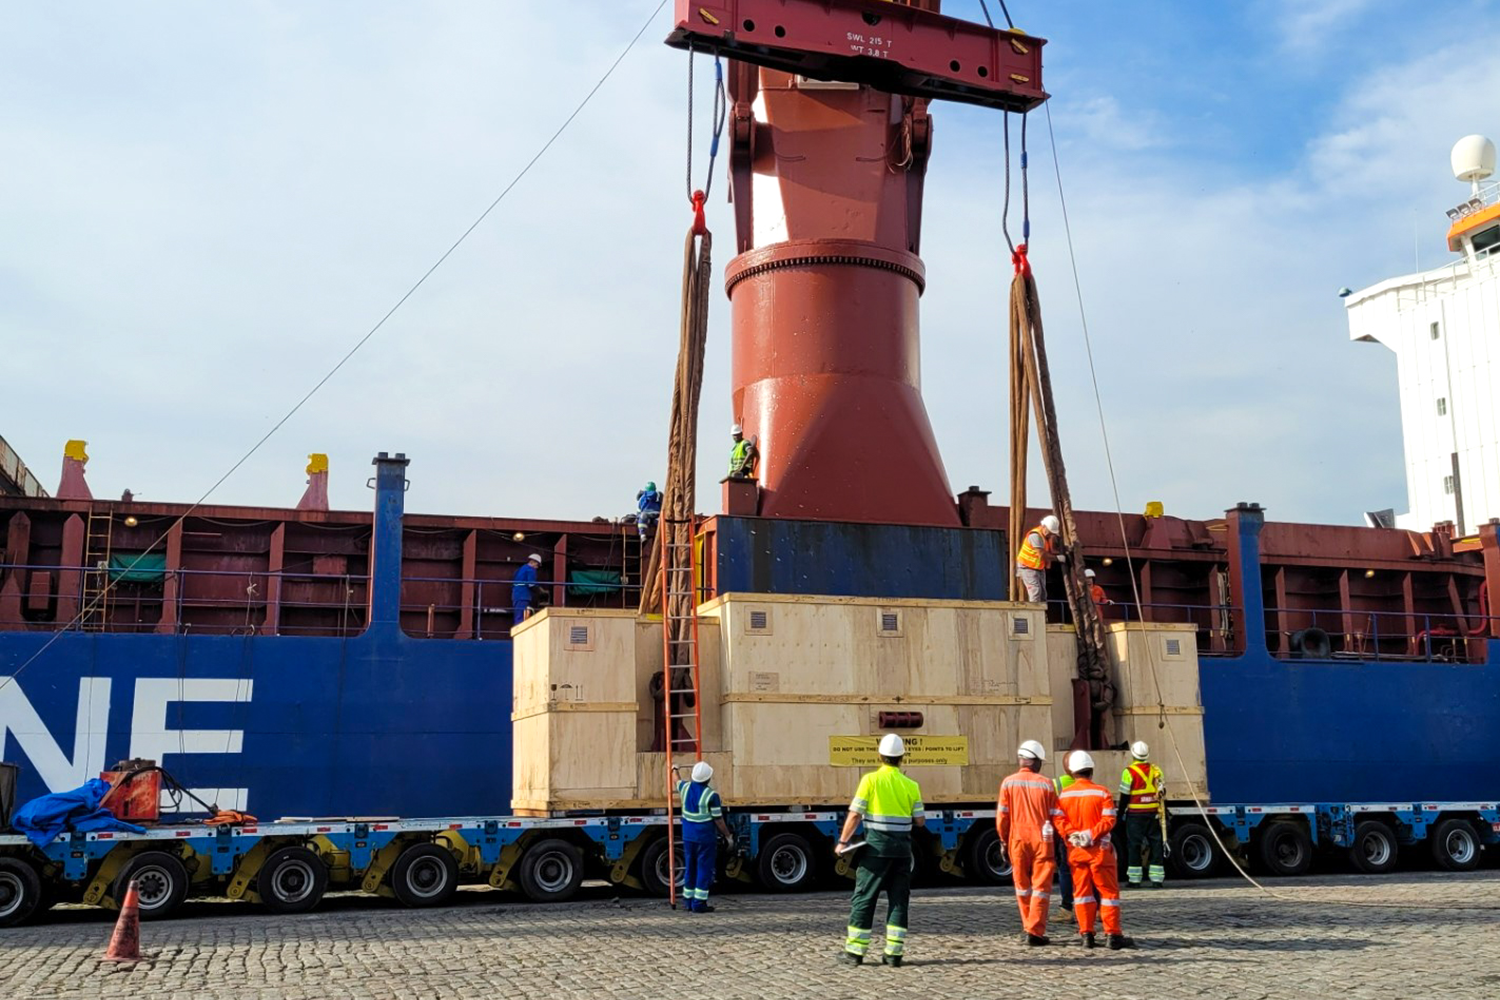 Arbeiter im Hafen stehen um eine riesige Ladung, die von einem Kran gehalten wird